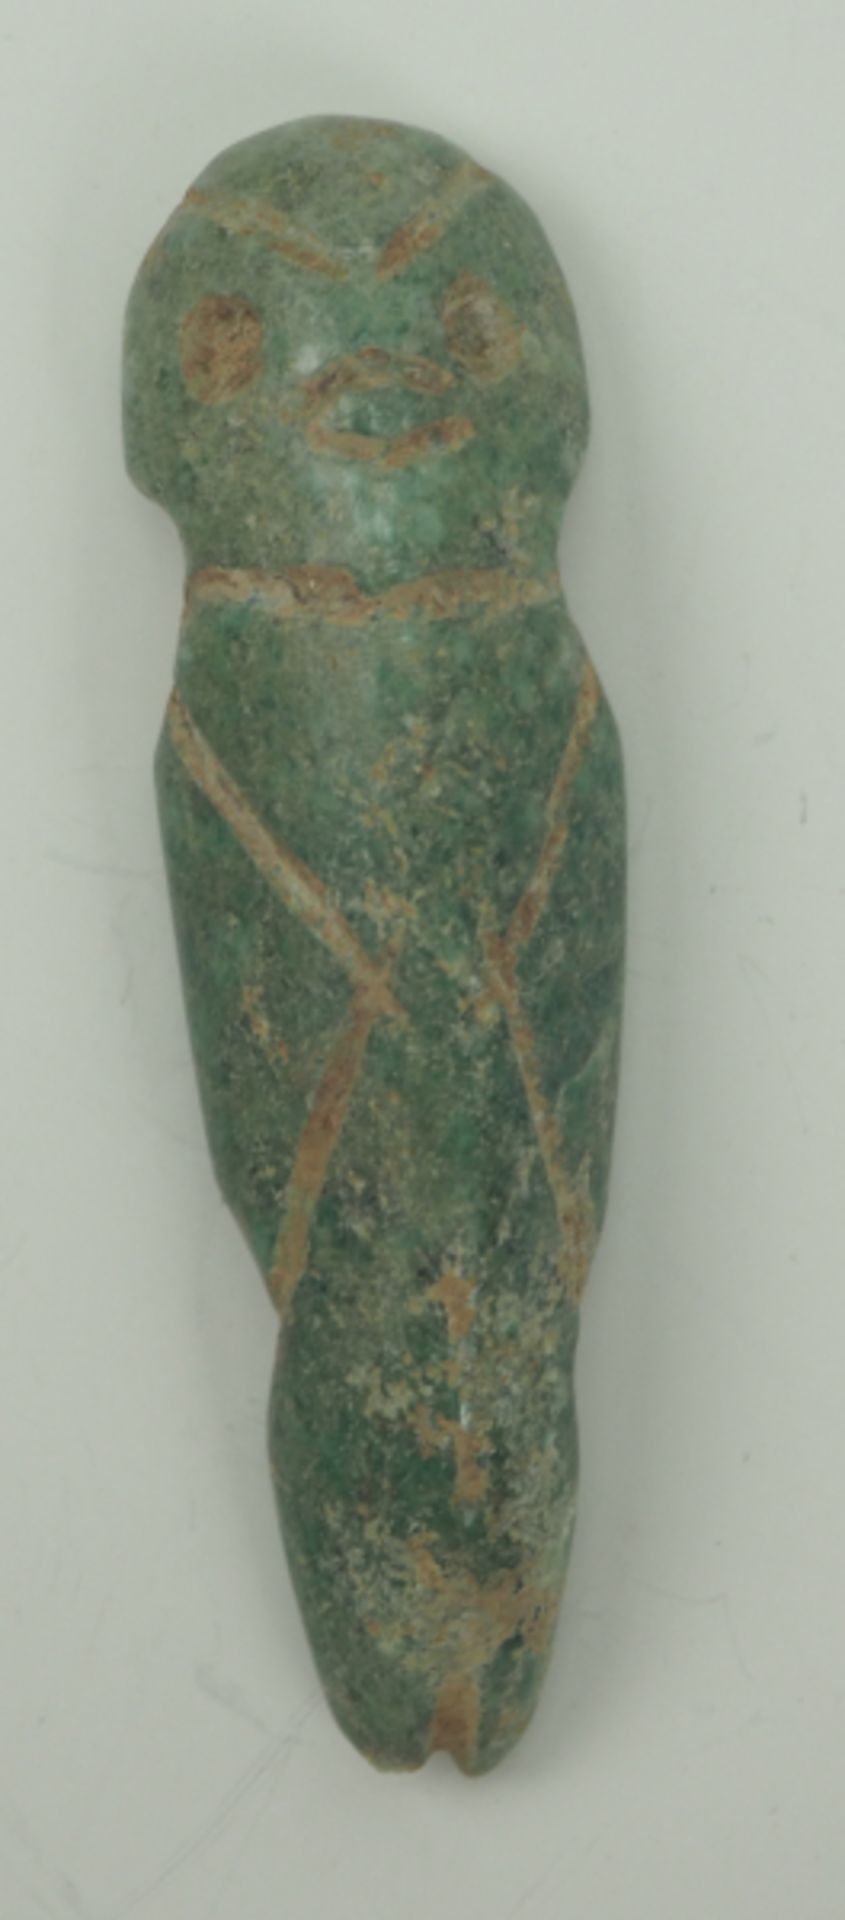 Mittelamerika: Azteken / Maya - Idol.Nephrit, anthropomorph, mit Bohrung zum tragen als Anhänger. - Bild 2 aus 3